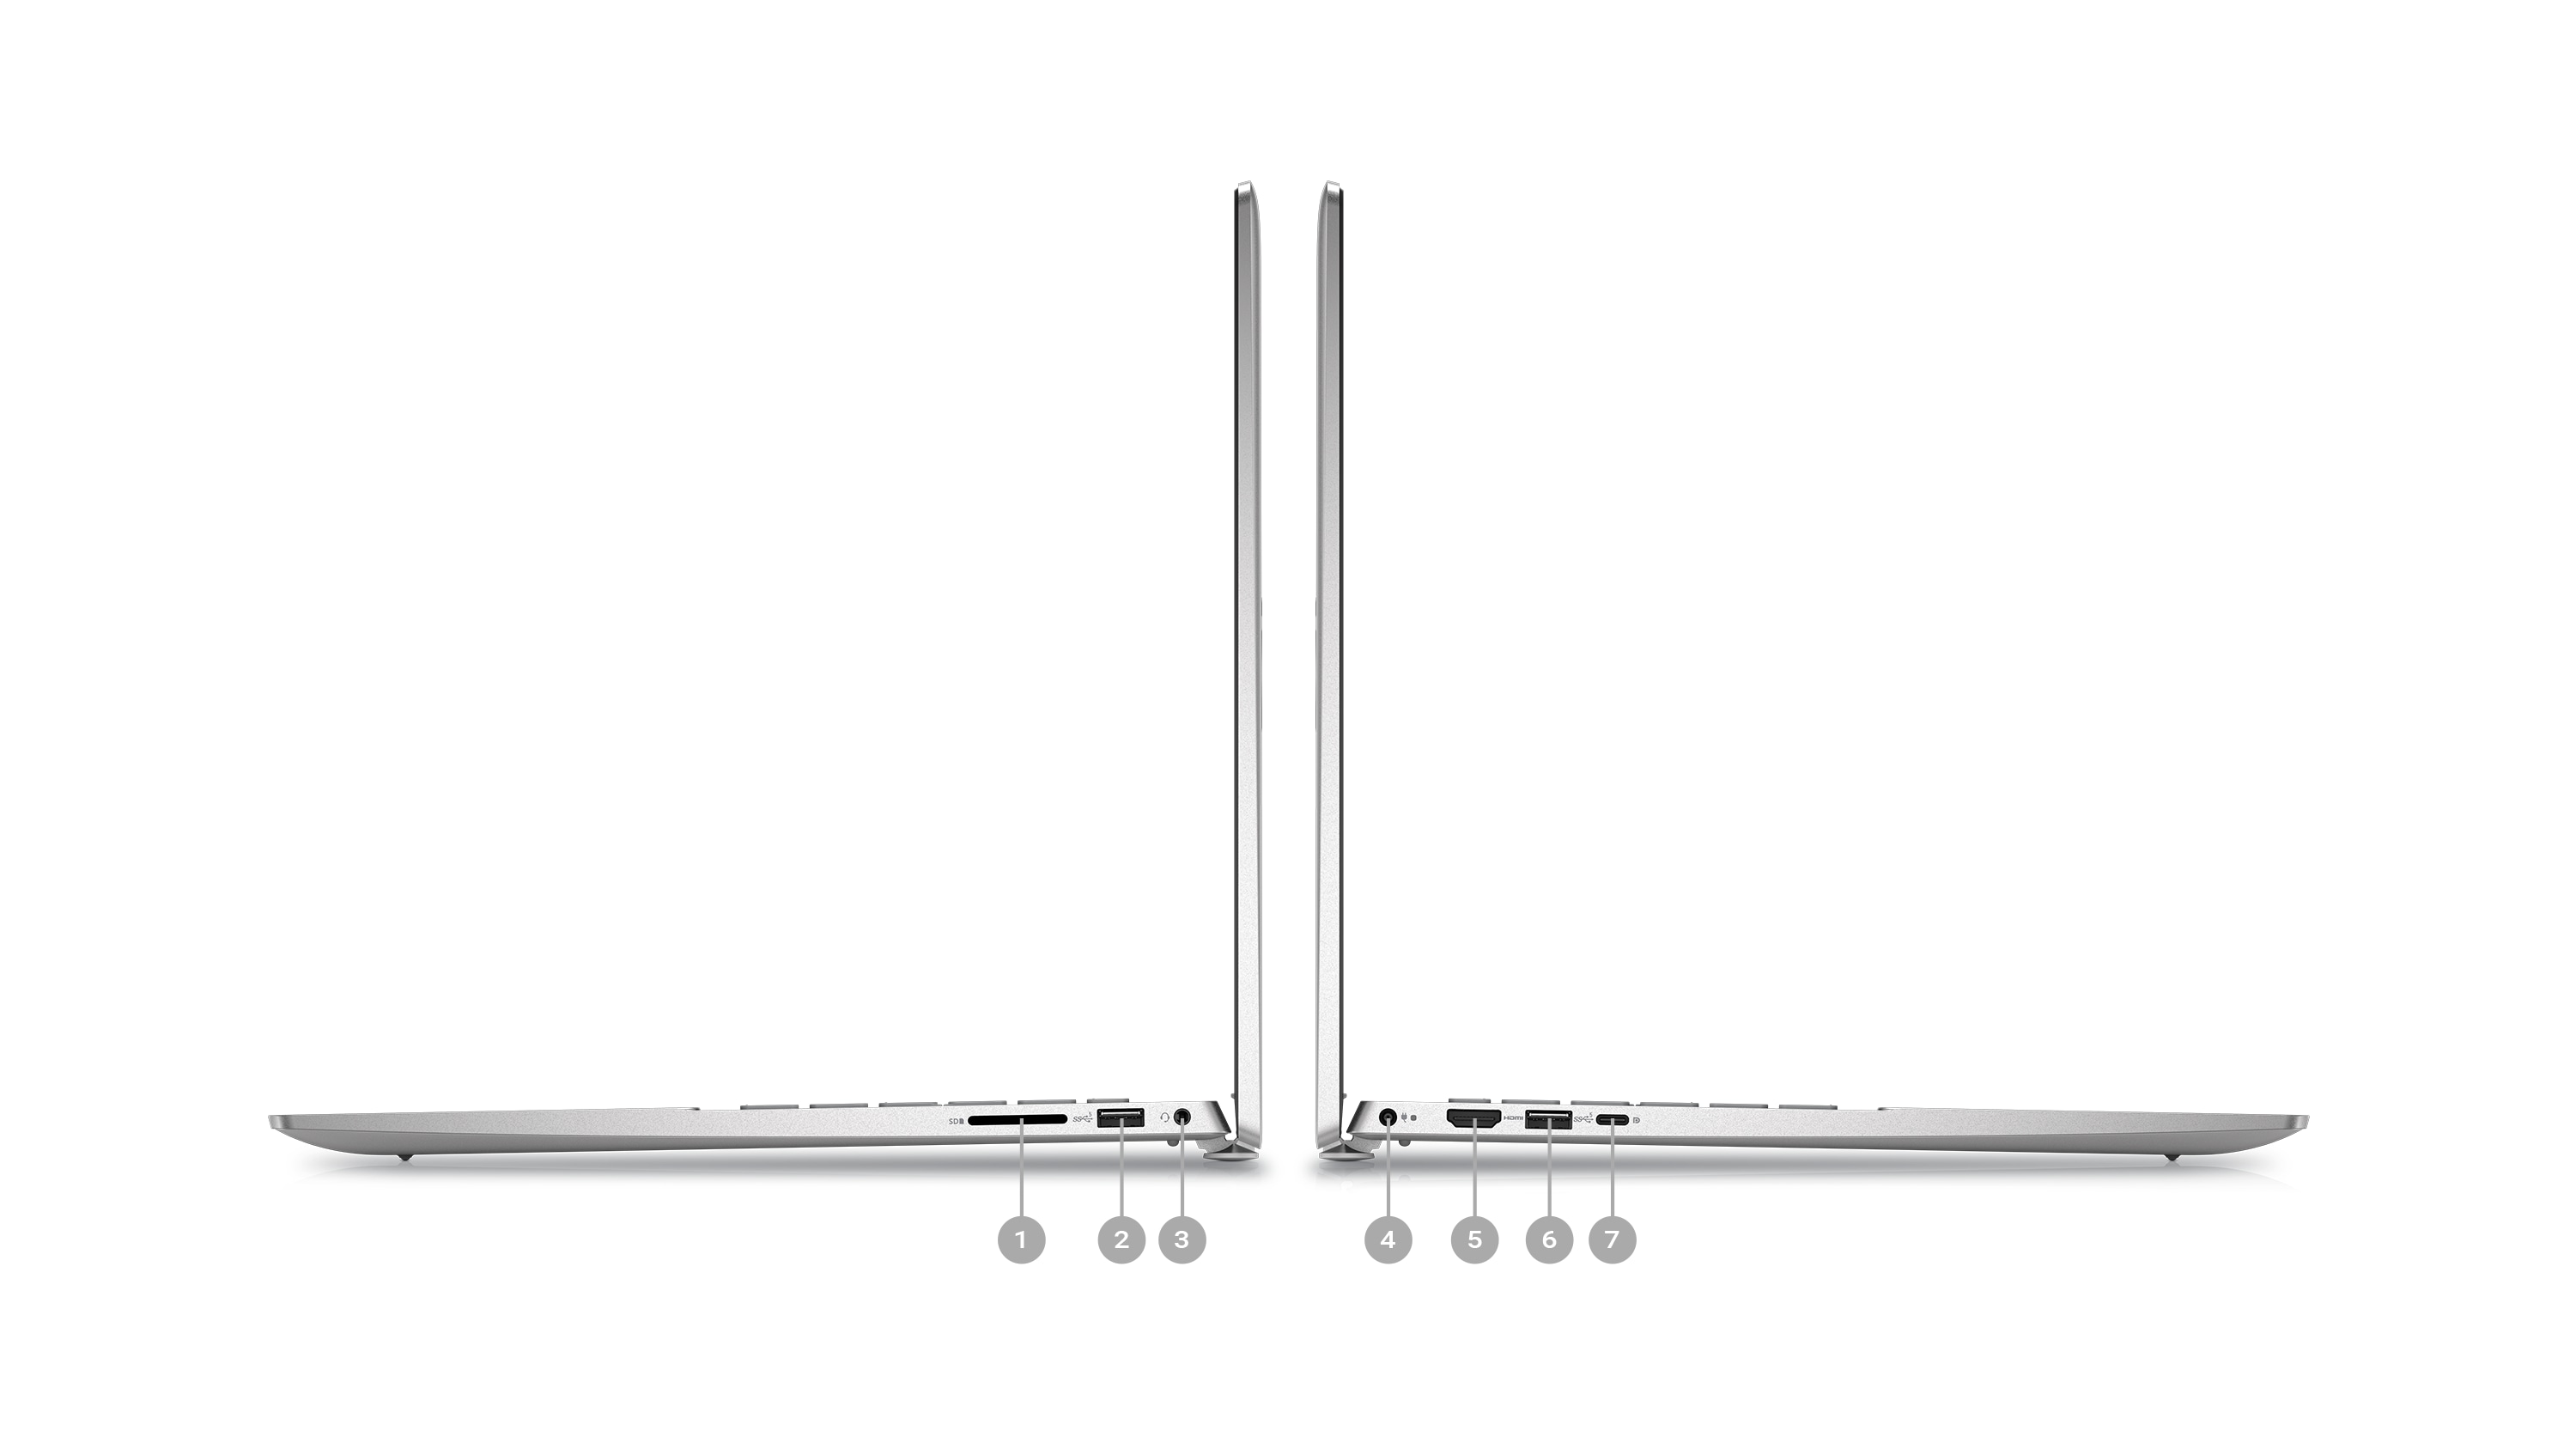 Photo de deux ordinateurs portables Dell Inspiron 5620 placés de côté avec les chiffres 1 à 7 indiquant les ports des produits.